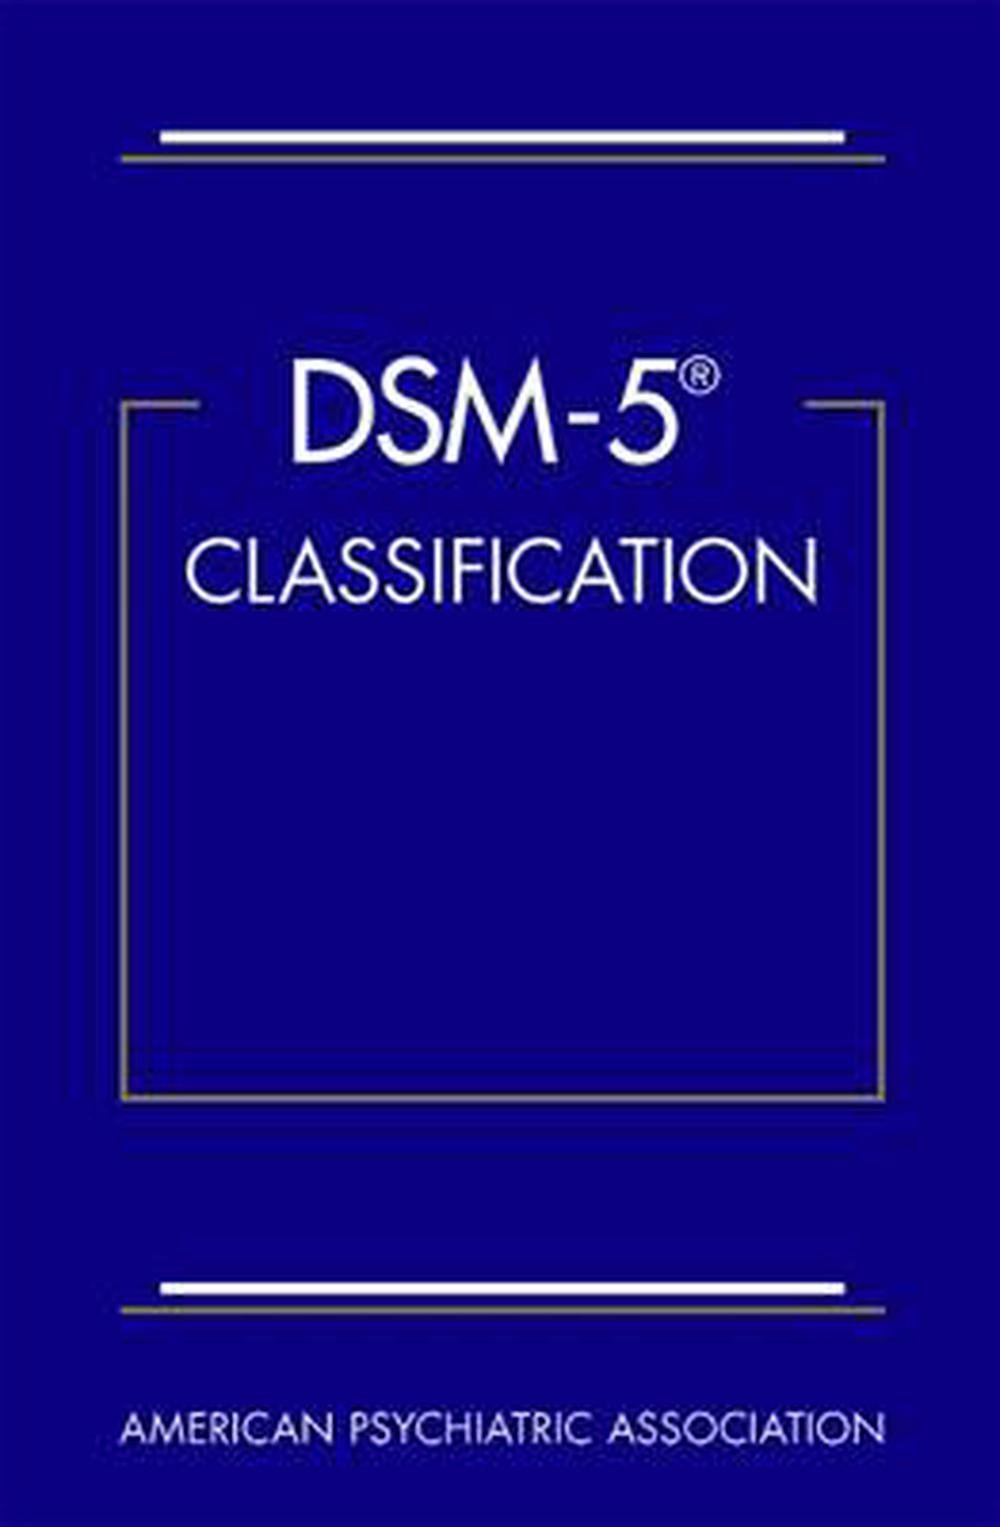 dsm 5 description for asd